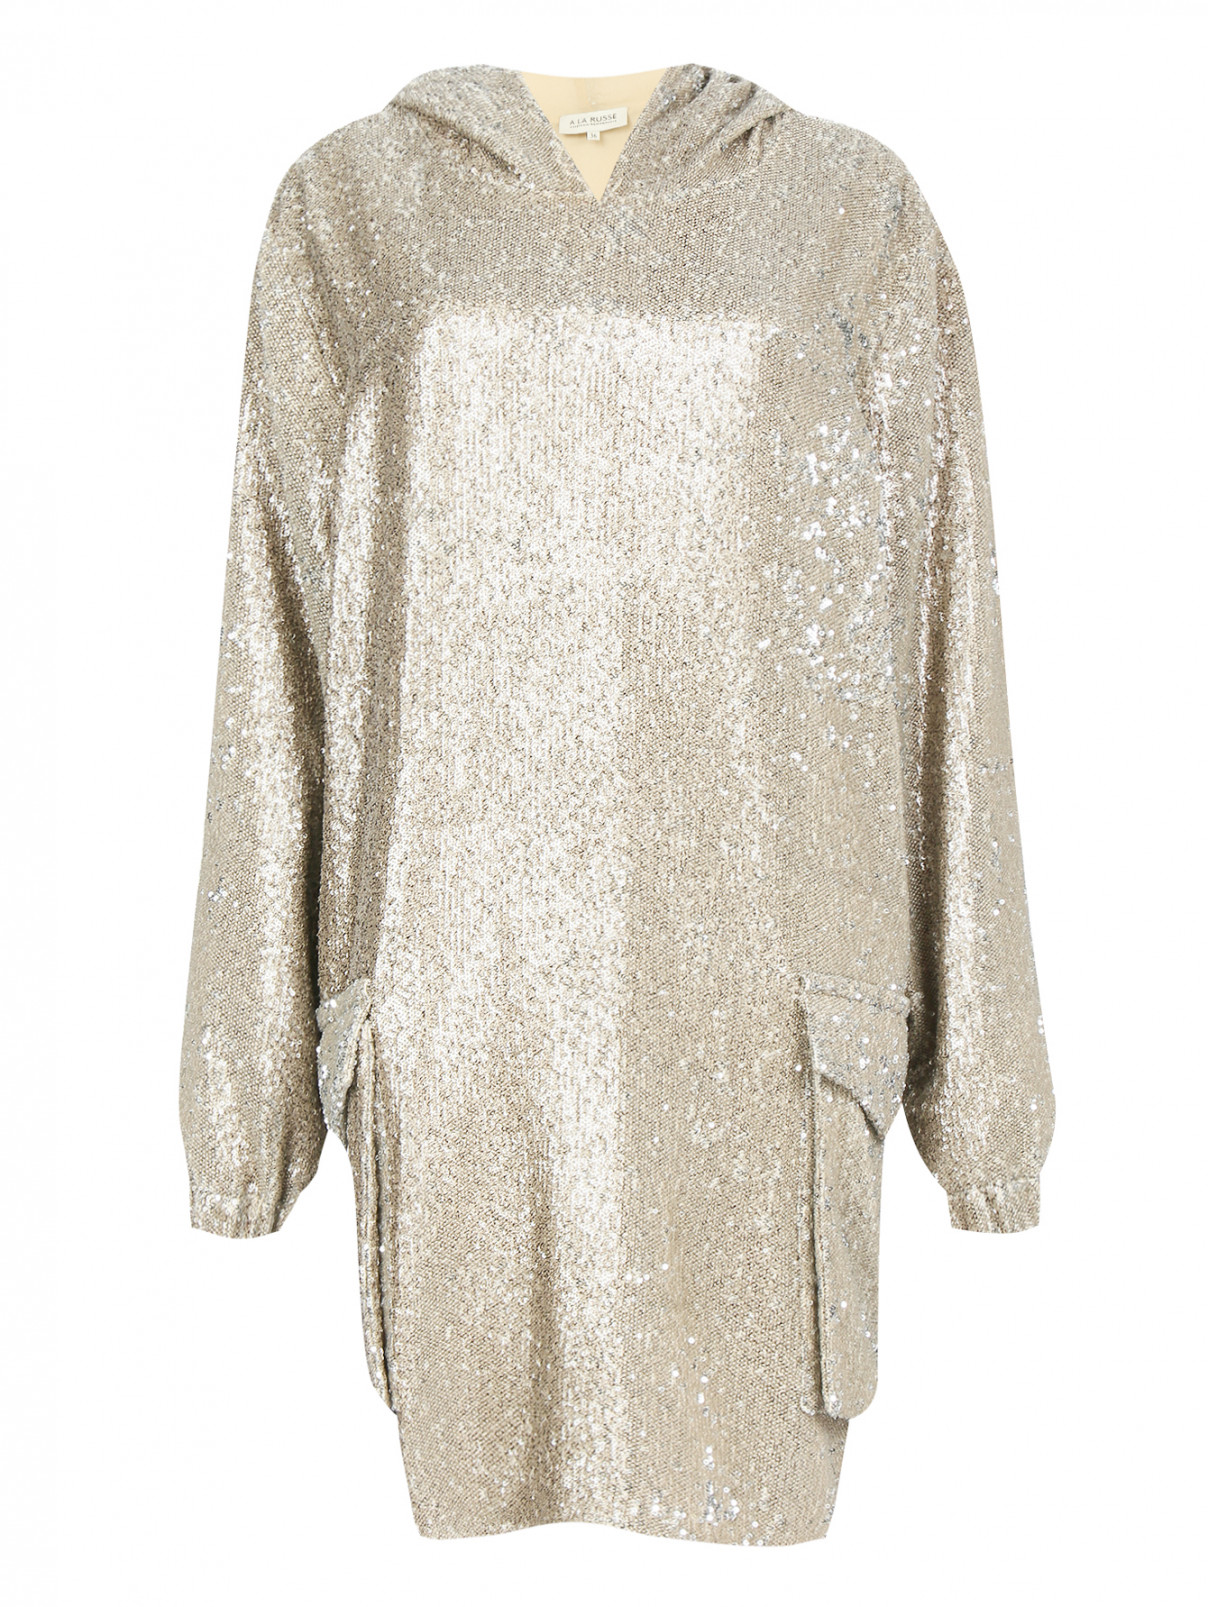 Платье-мини свободного кроя декорированное пайетками A La Russe  –  Общий вид  – Цвет:  Золотой